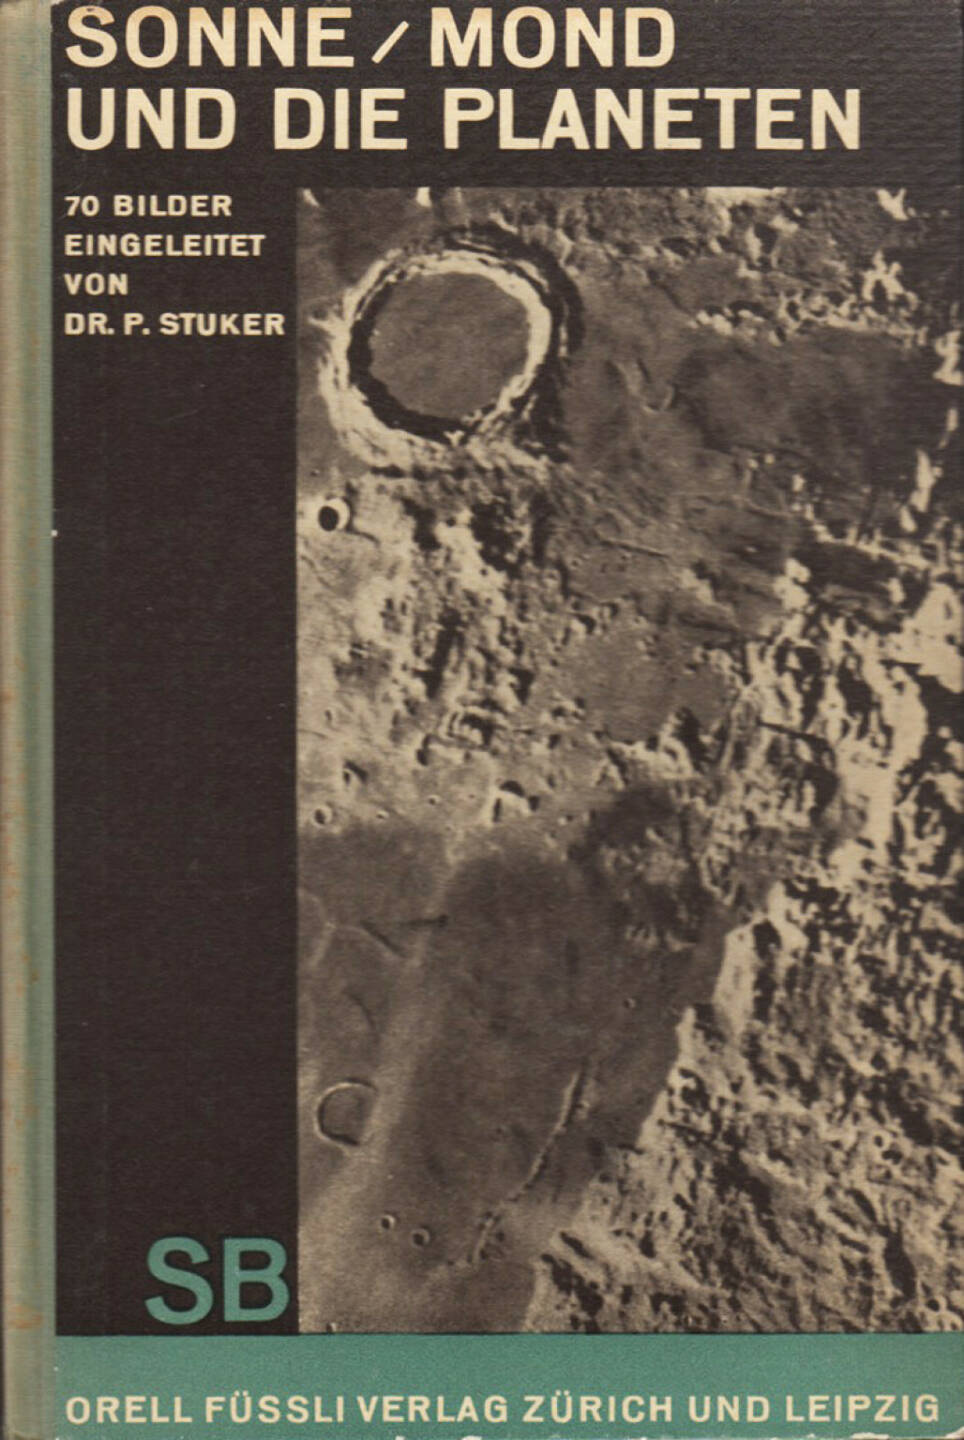 Peter Stuker - Sonne, Mond und die Planeten, Orell Füssli Verlag 1930, Cover - http://josefchladek.com/book/peter_stuker_-_sonne_mond_und_die_planeten_70_bilder_eingeleitet_und_erlautert_von_p_stuker 